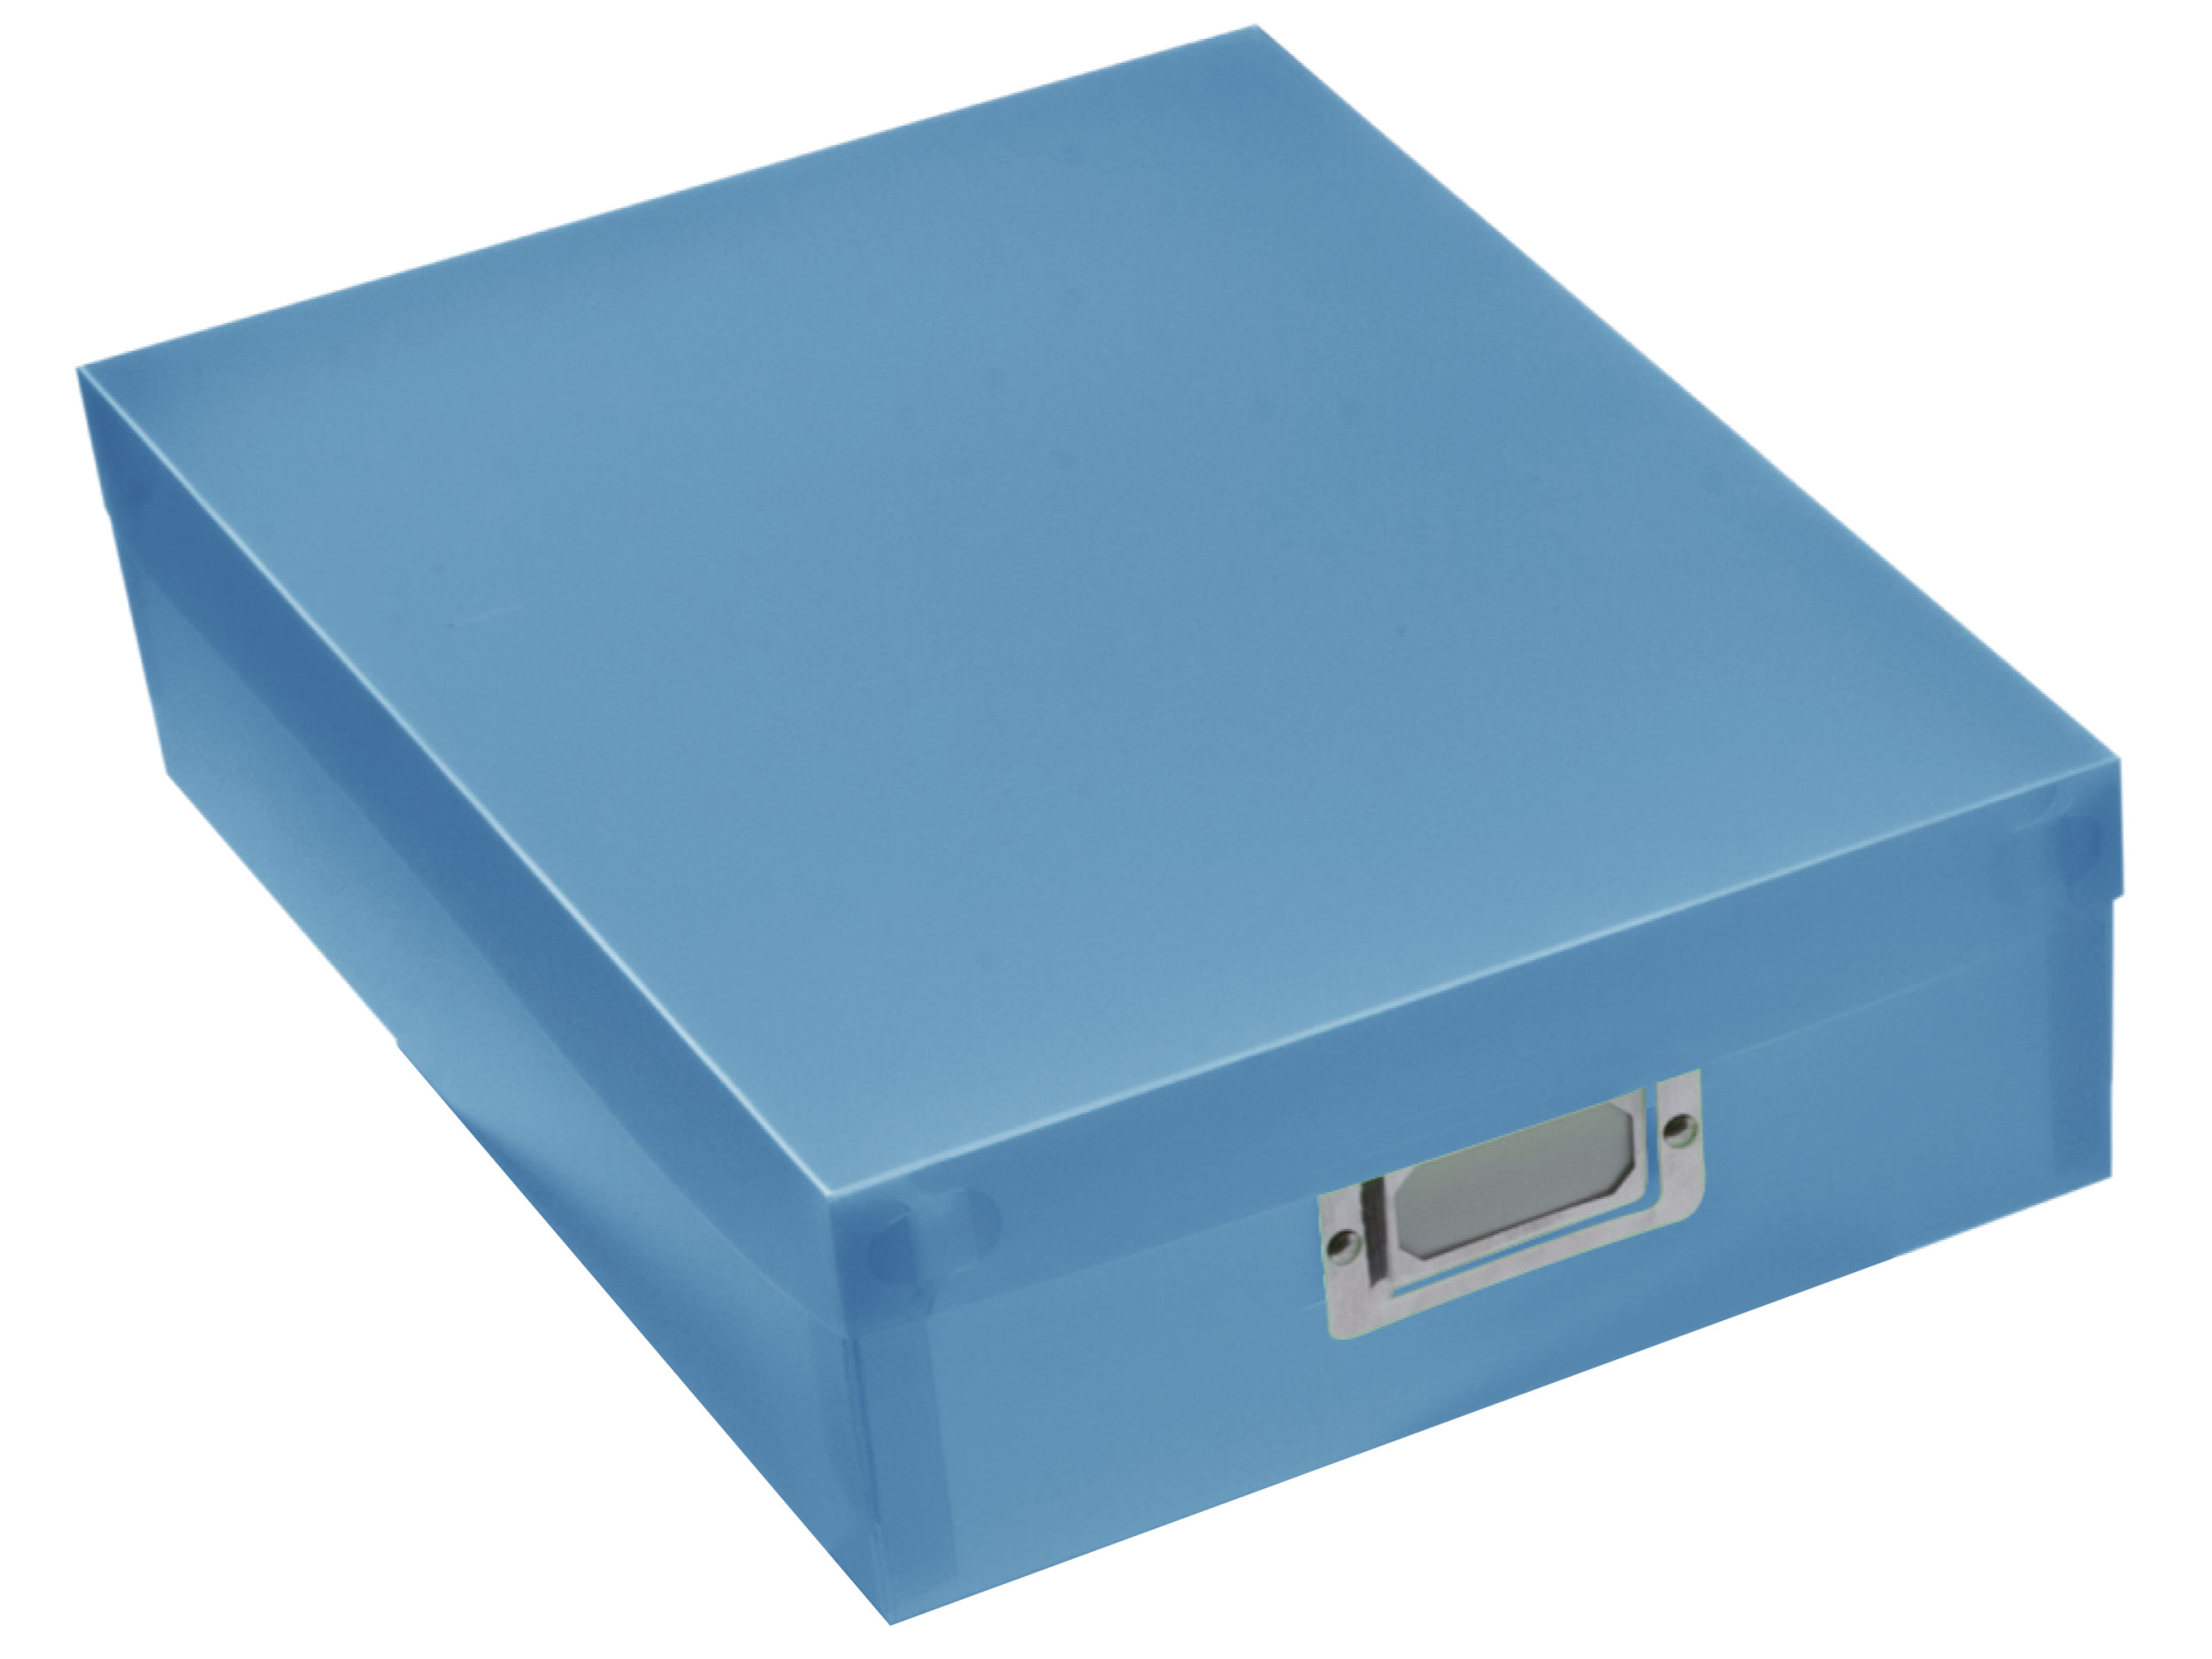 Pudełko na dokumenty niebieskie